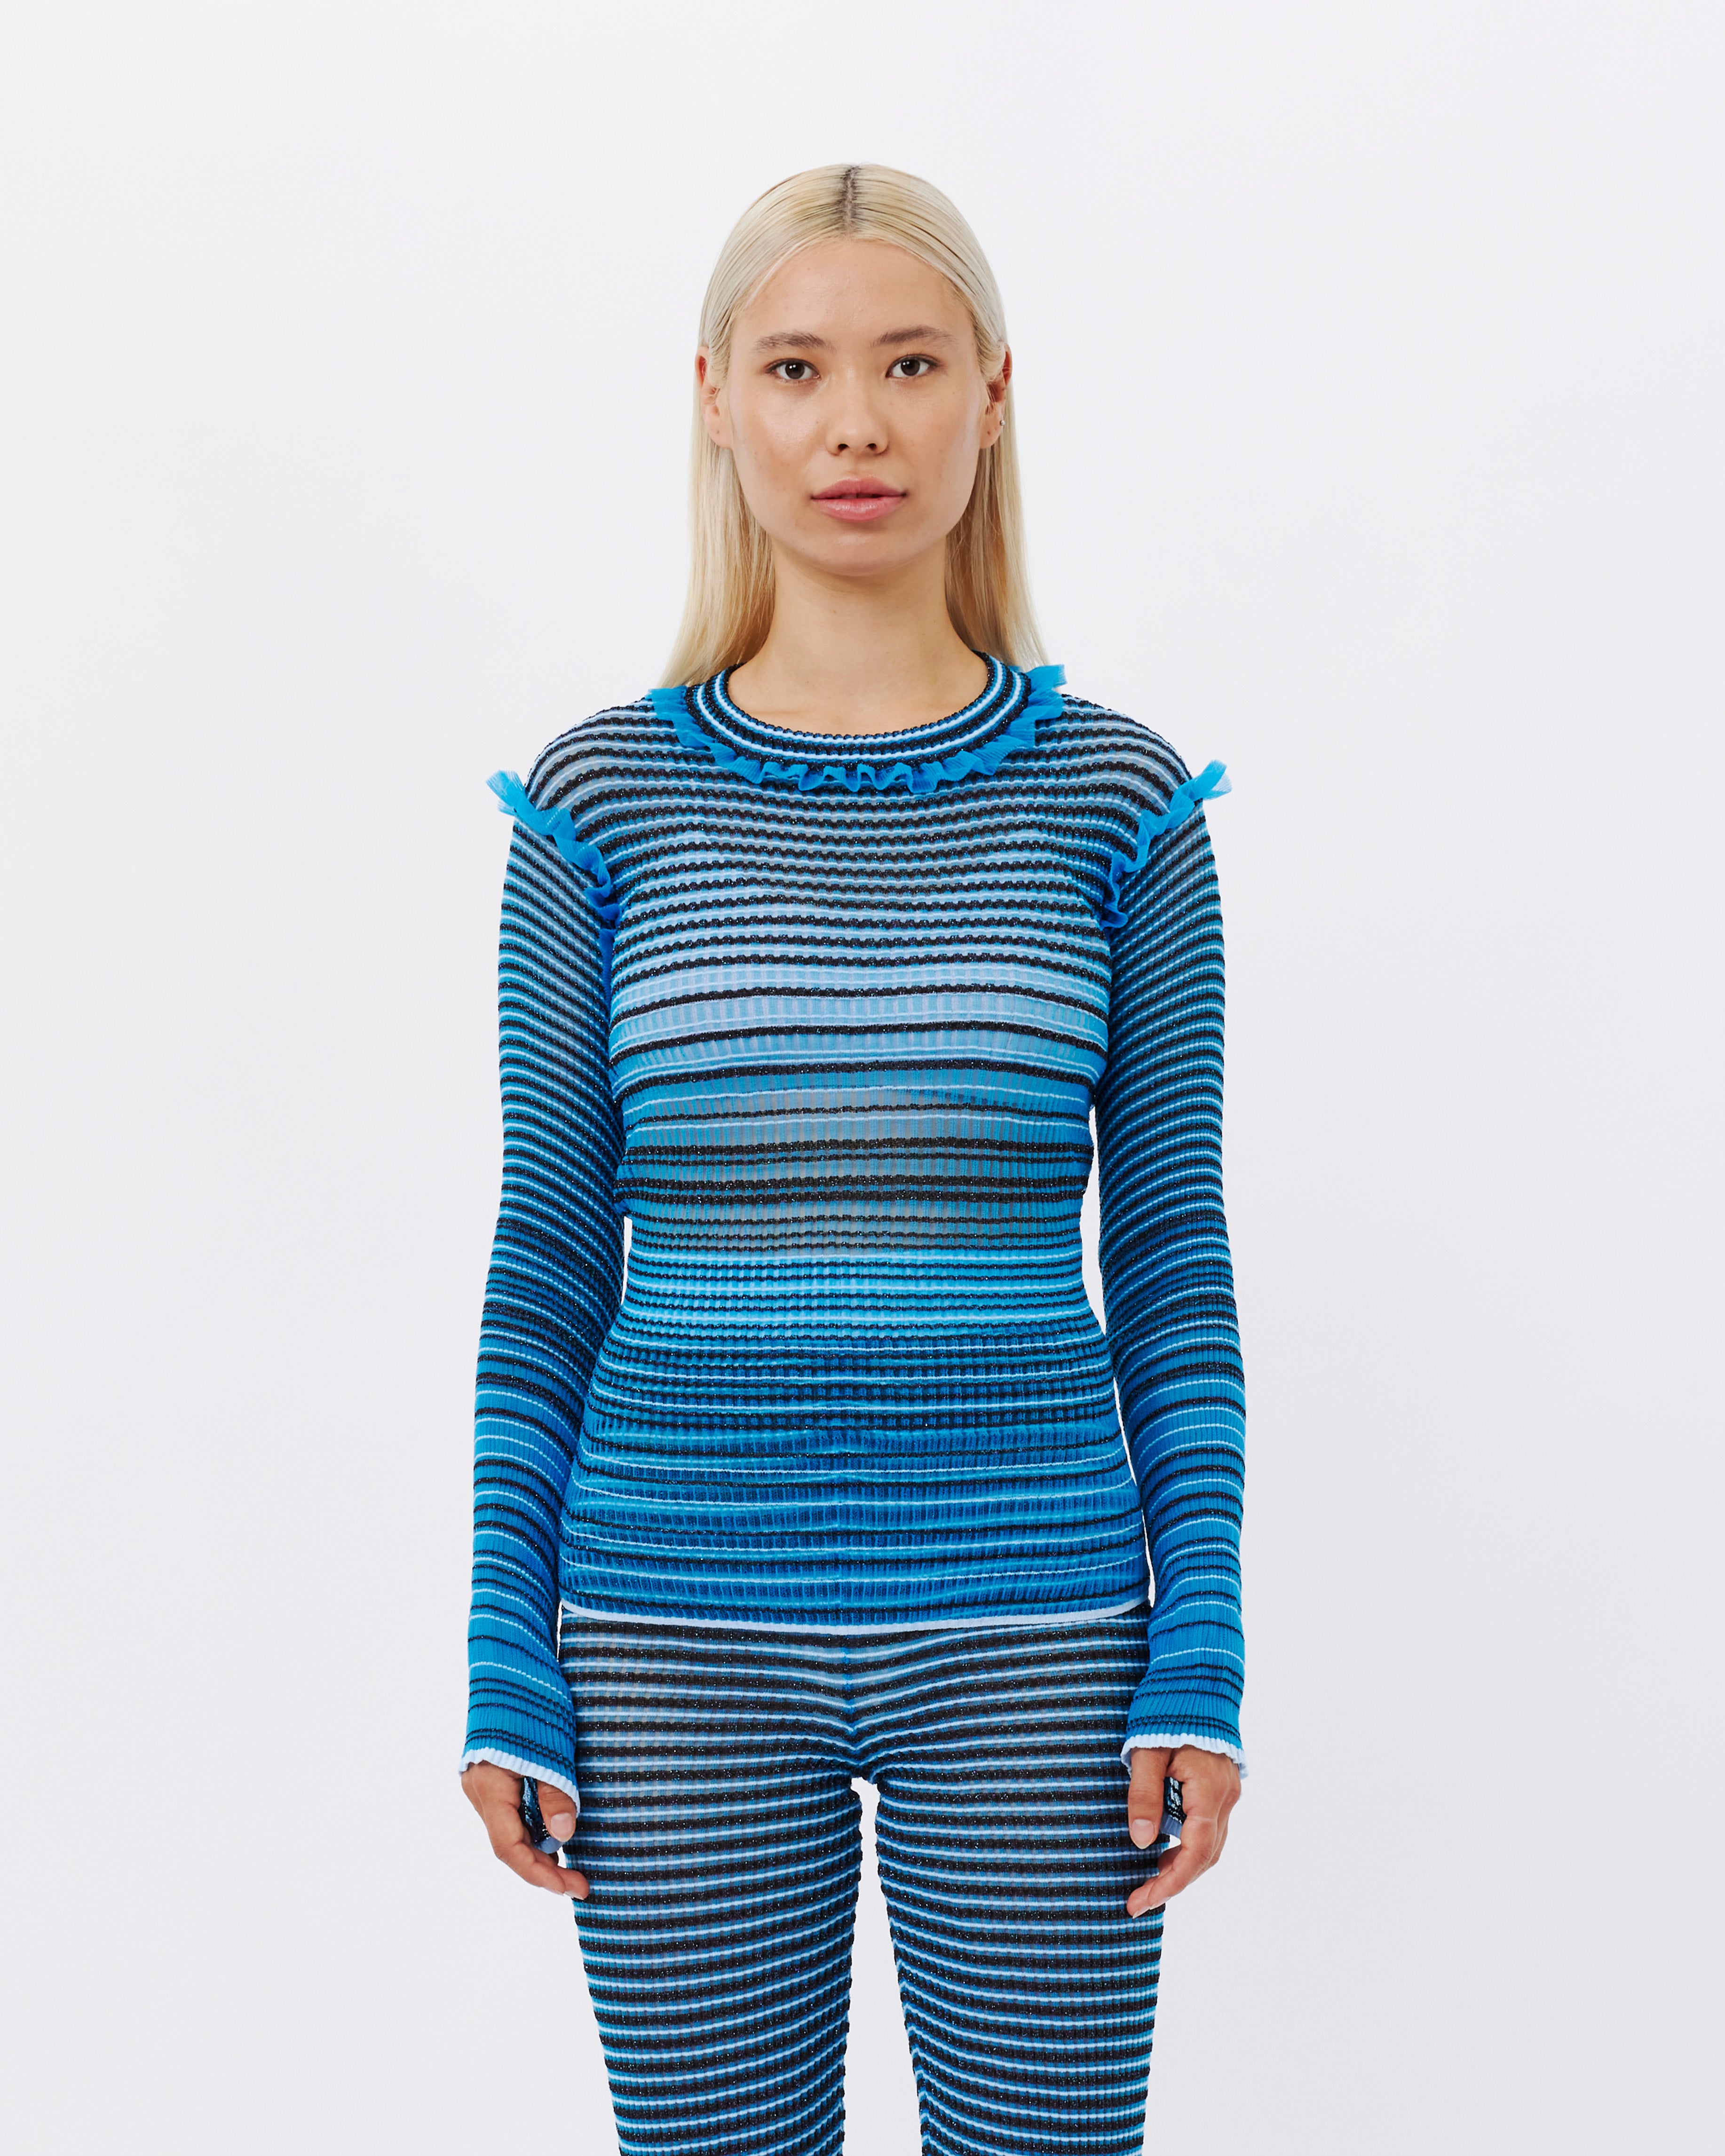 Nadia Wire Secret stripes jumper blue/brown 802-BLU